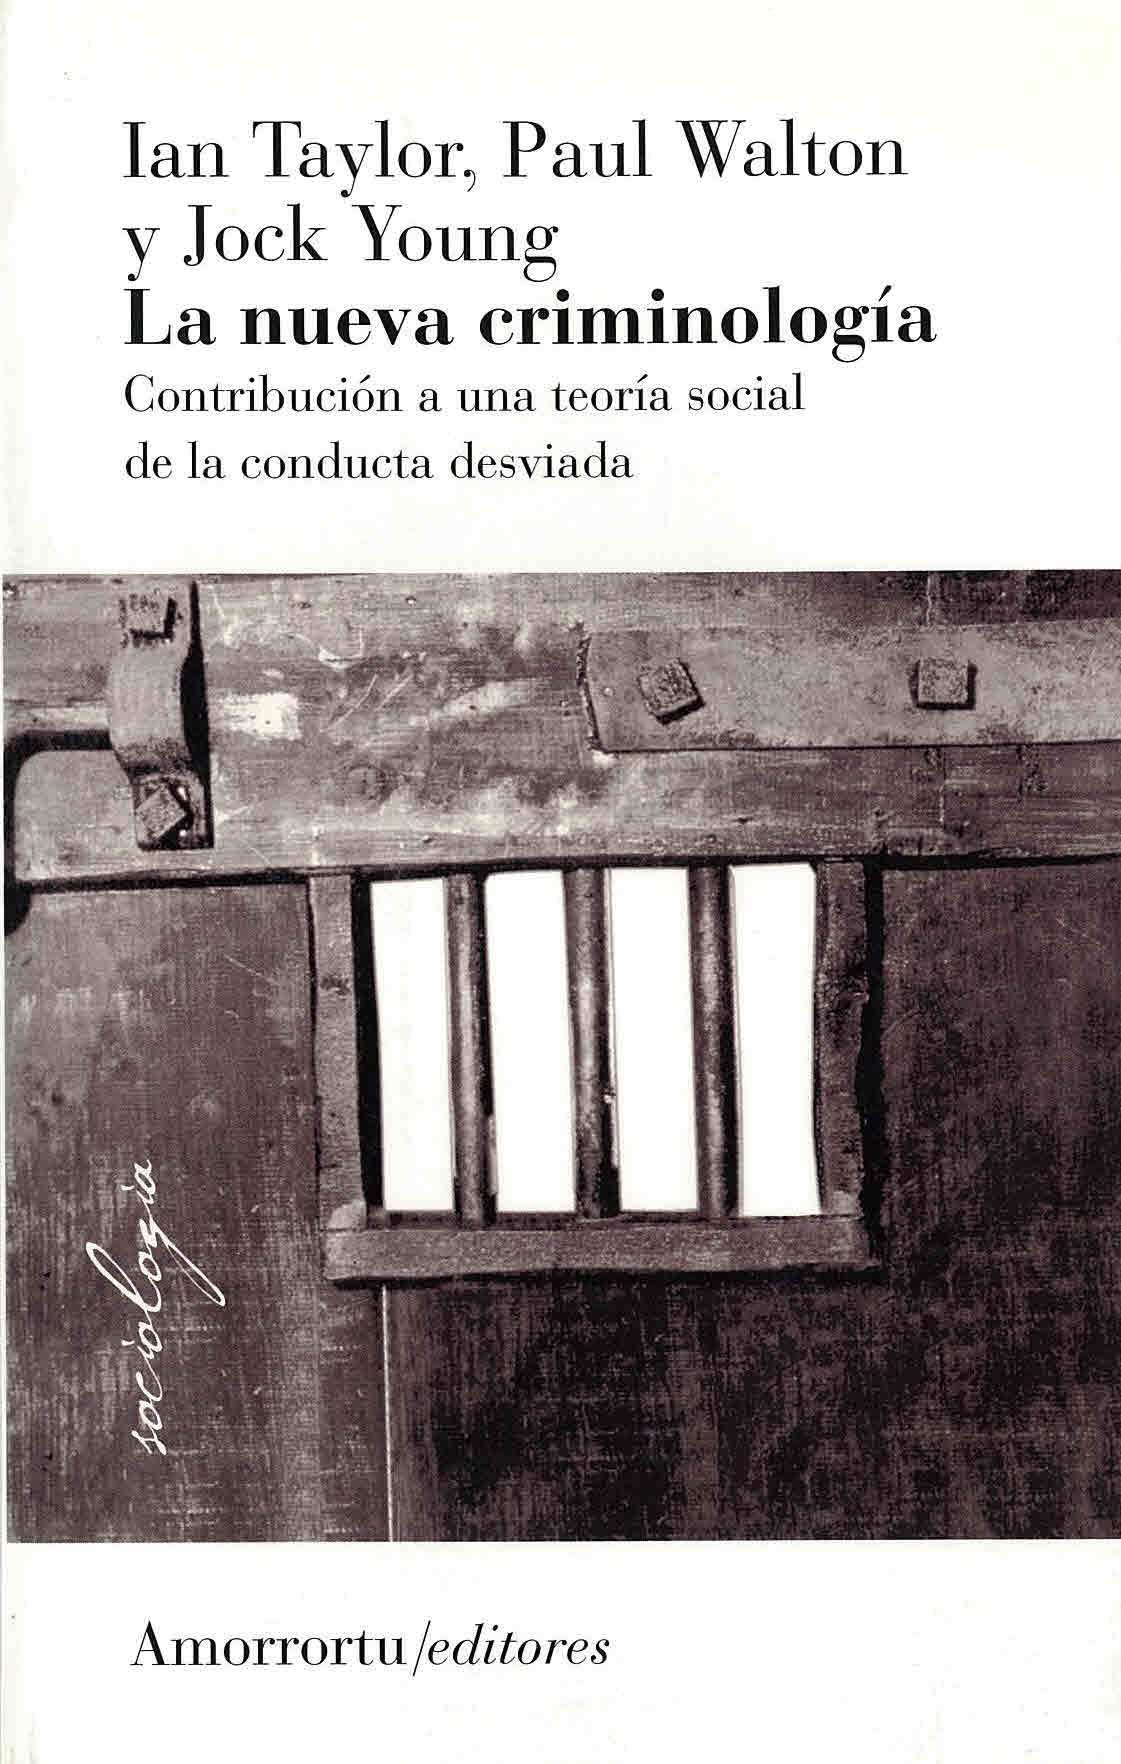 La nueva criminología: Contribución a una teoría social de la conducta desviada